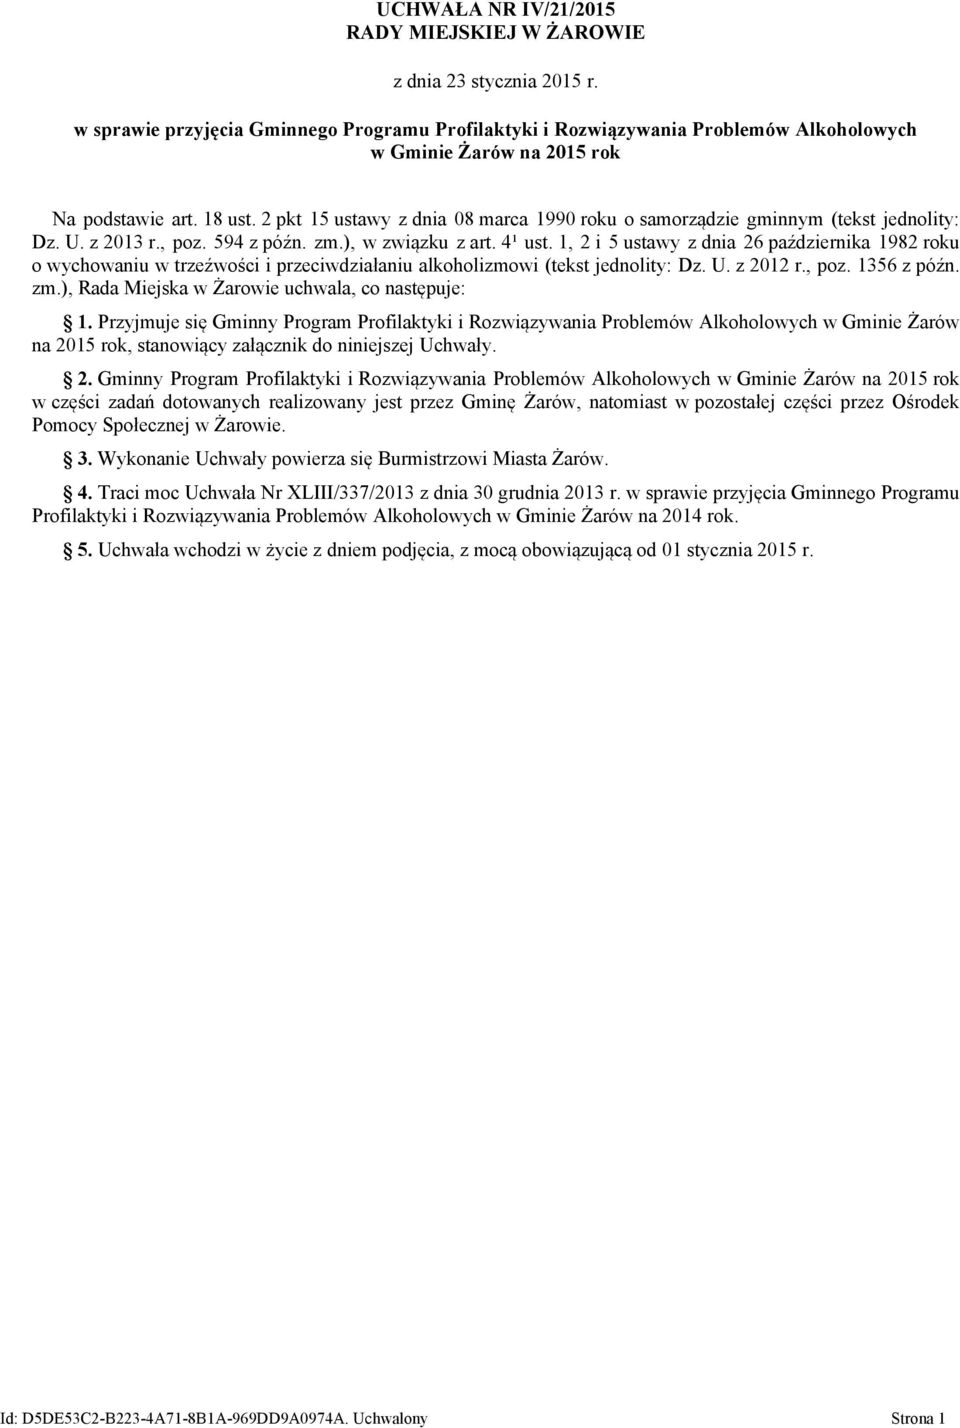 2 pkt 15 ustawy z dnia 08 marca 1990 roku o samorządzie gminnym (tekst jednolity: Dz. U. z 2013 r., poz. 594 z późn. zm.), w związku z art. 4¹ ust.